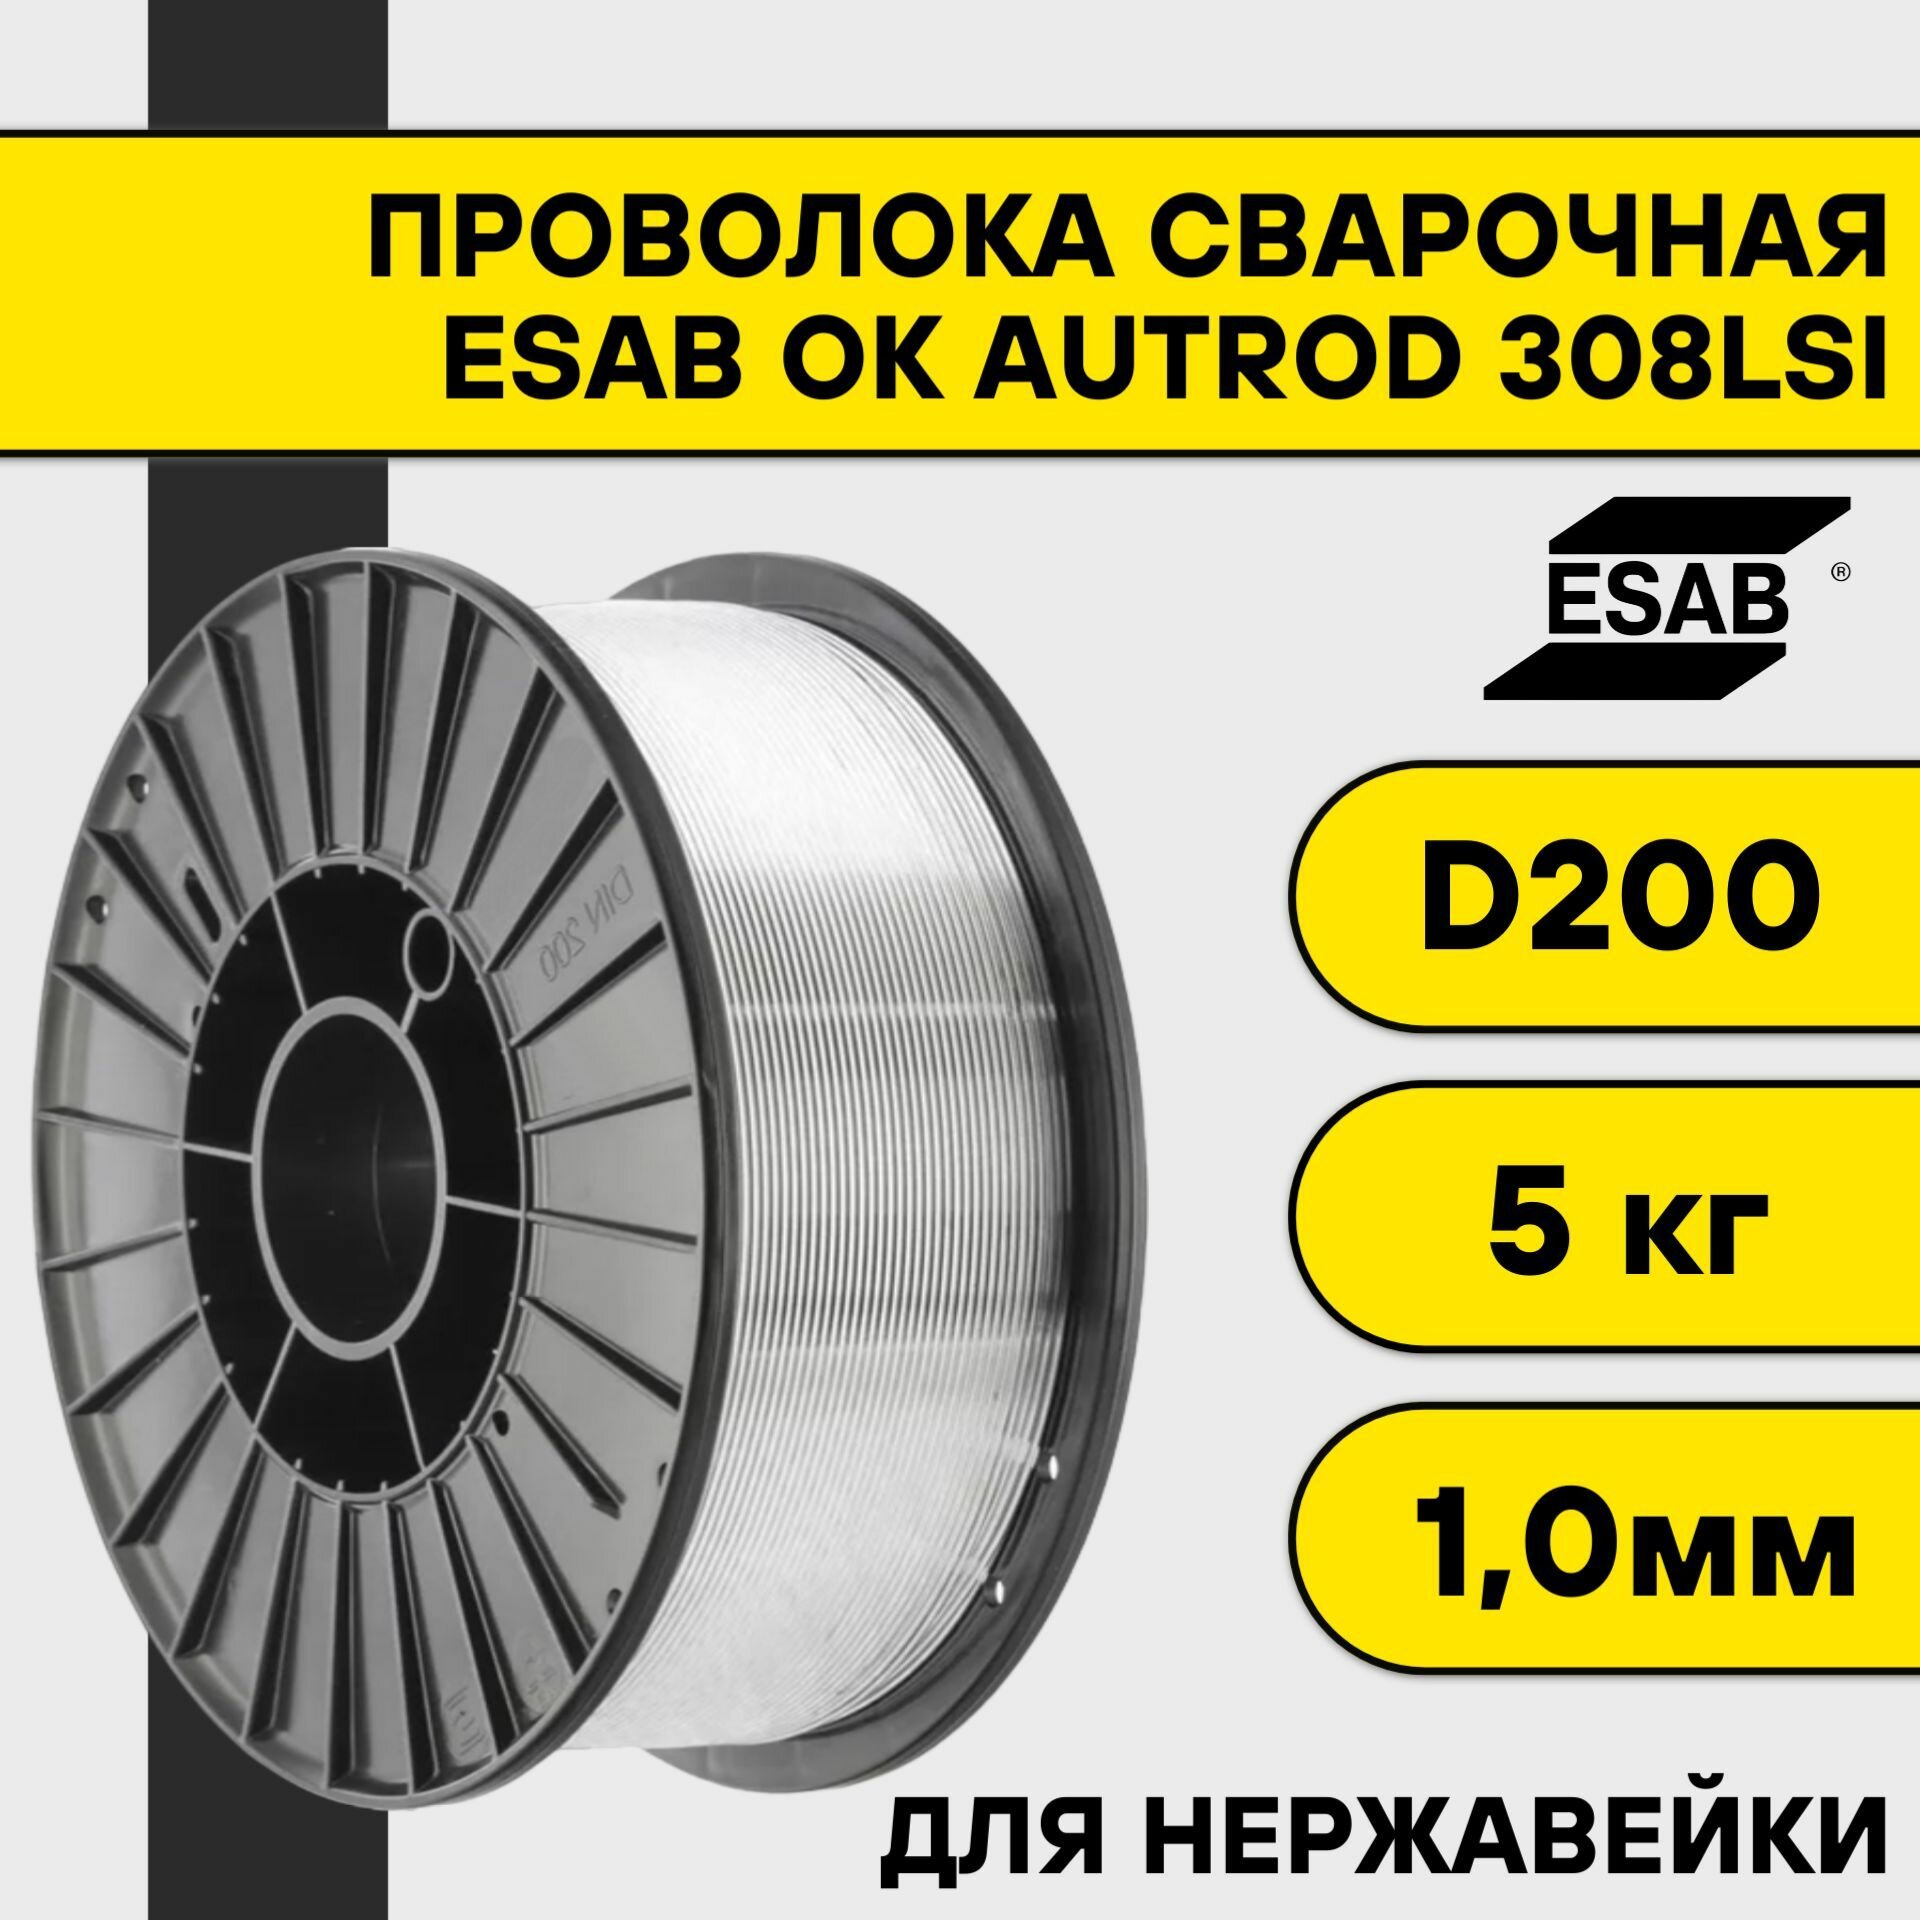 Сварочная проволока для нержавейки ОК Autrod 308Lsi ф 1,0 мм (5 кг) D200 Esab